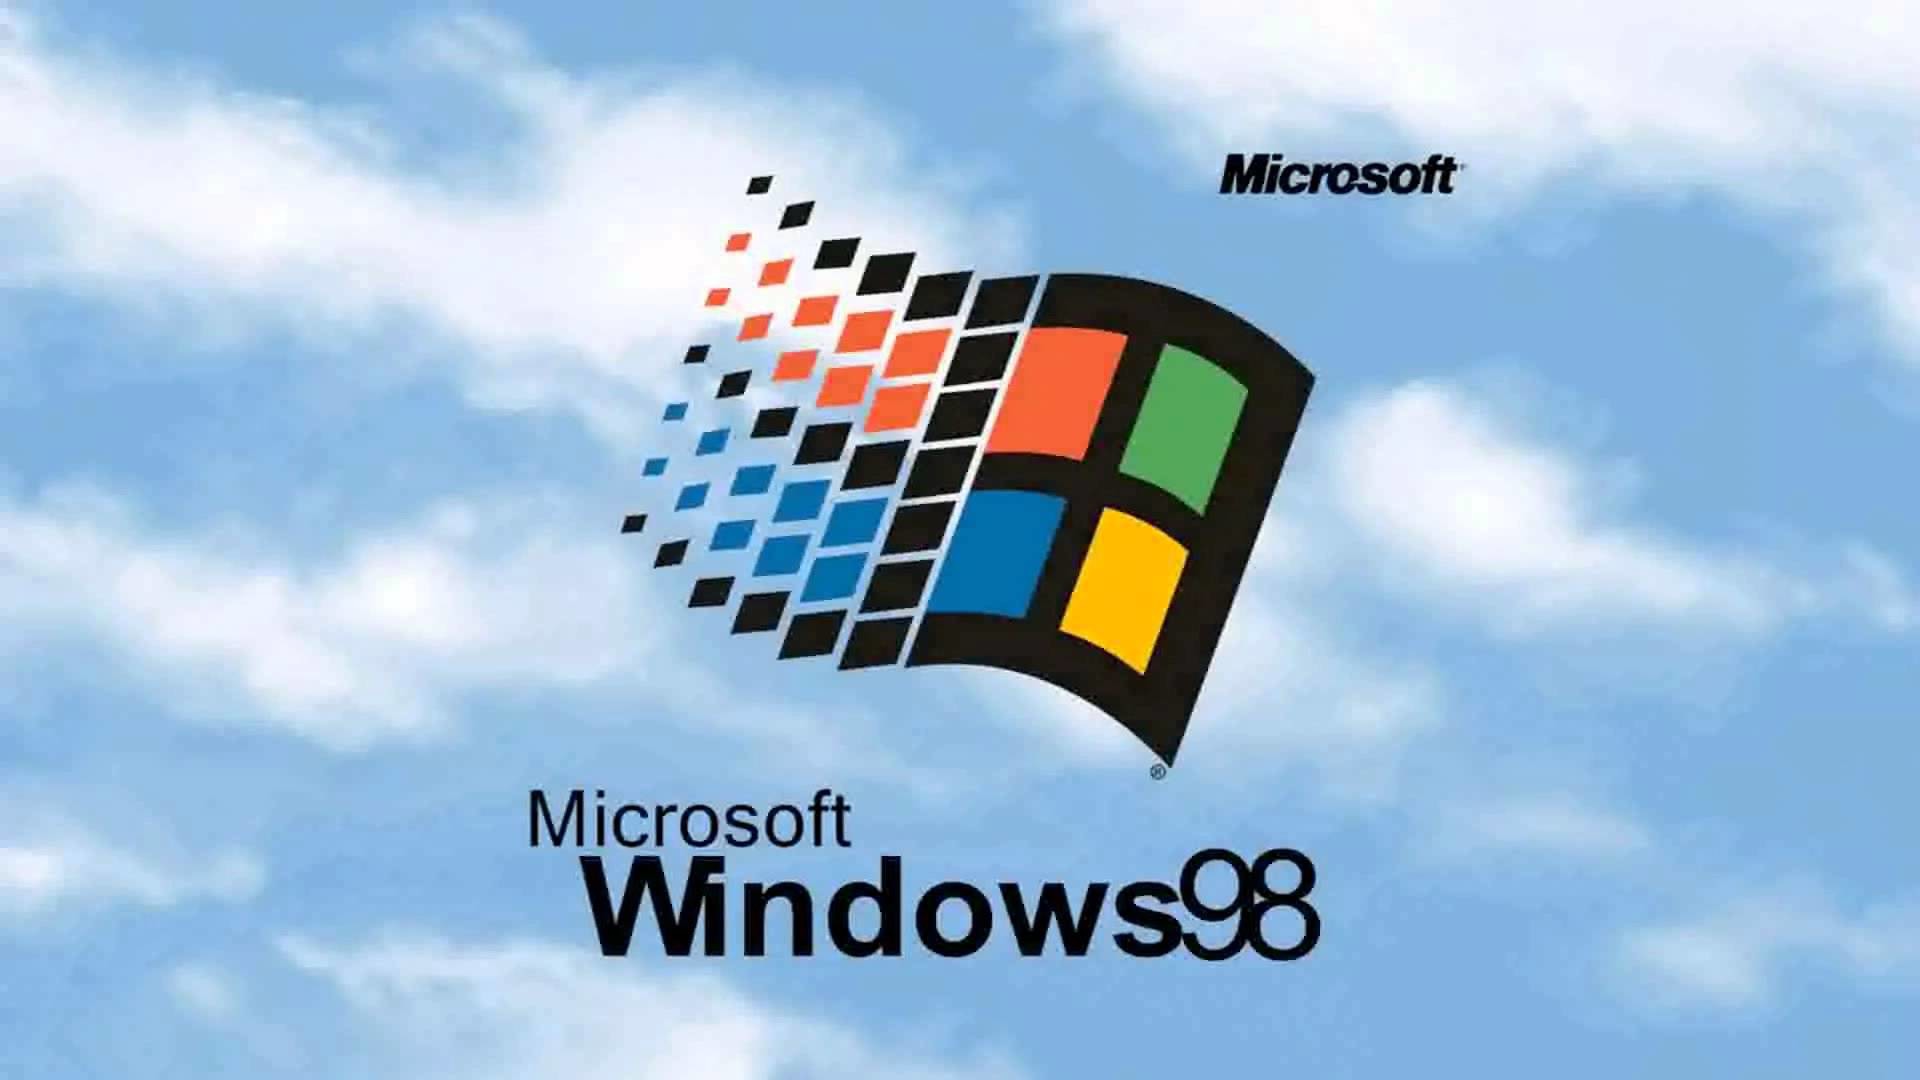 윈도우 95 벽지,루빅스 큐브,하늘,폰트,제도법